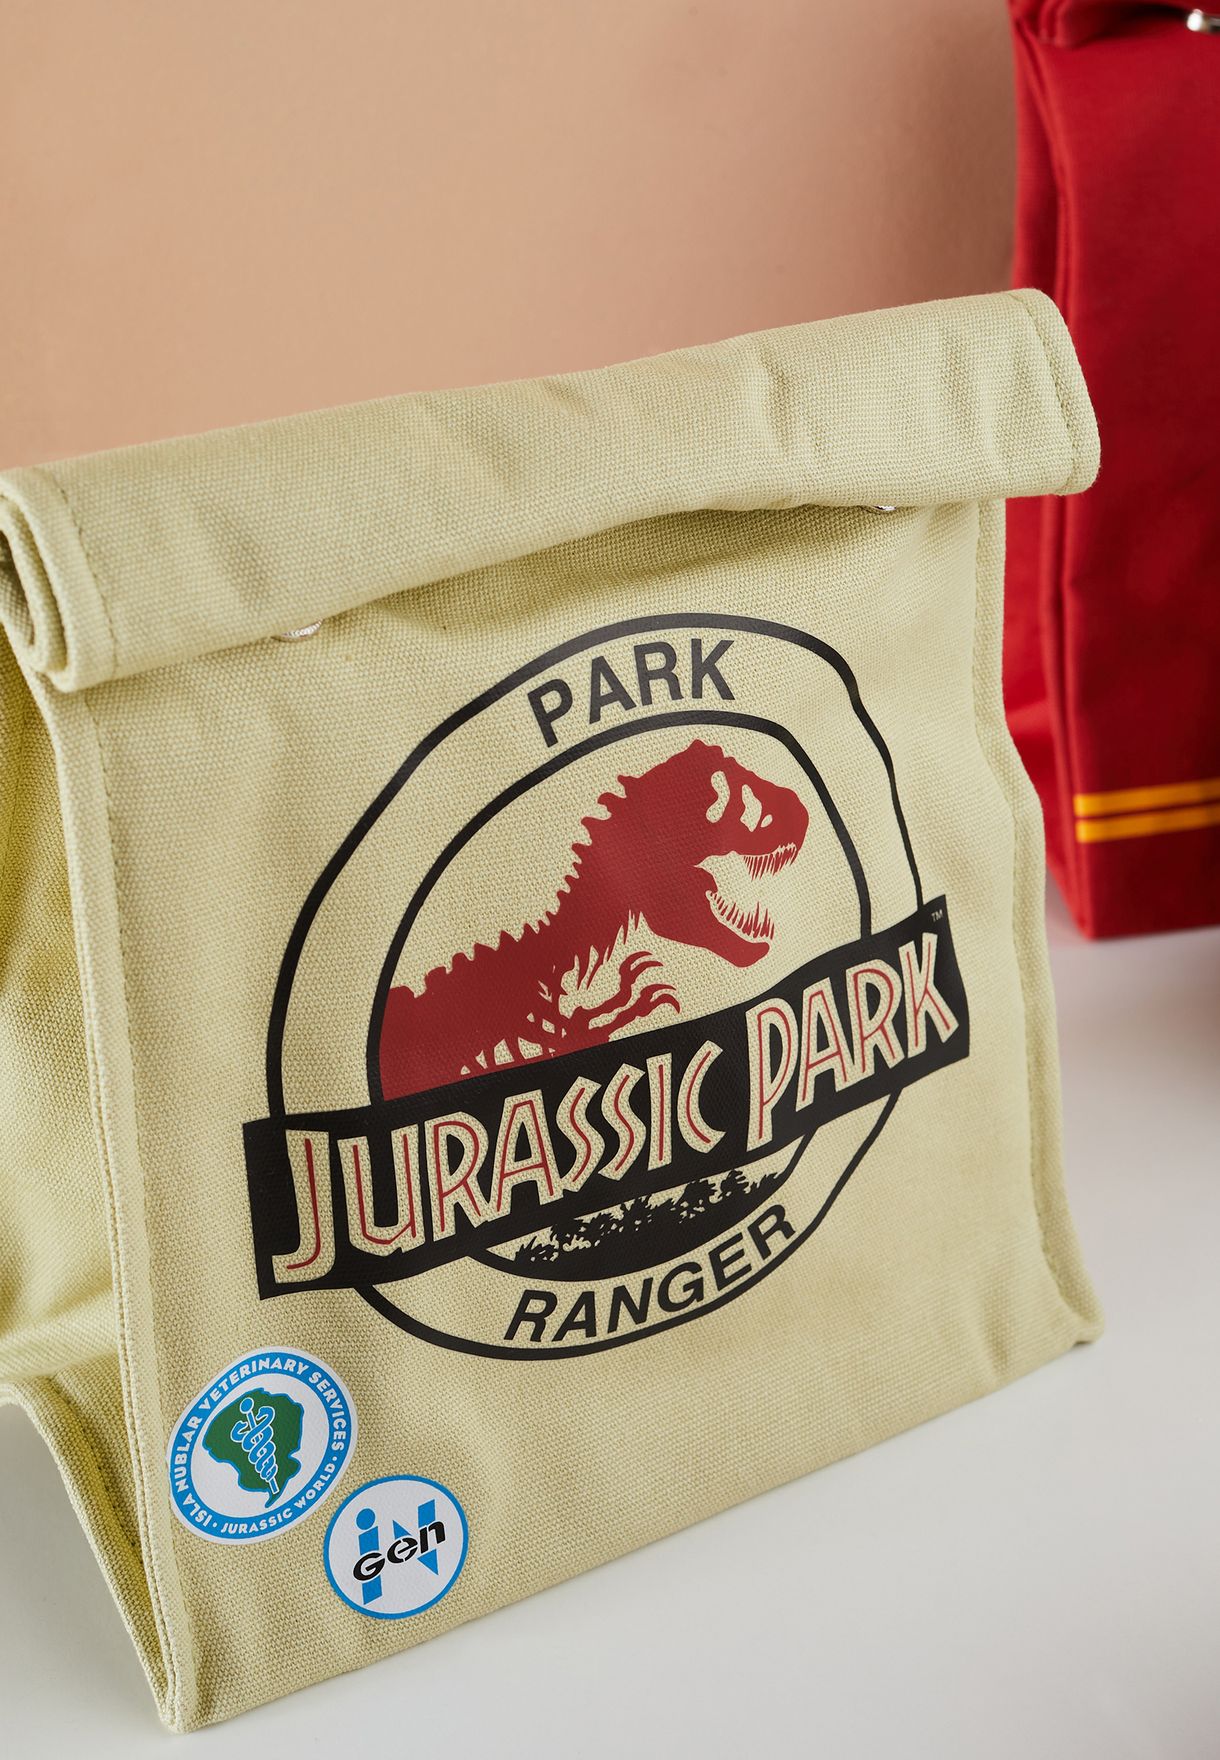 Jurassic Park Lunch Bag